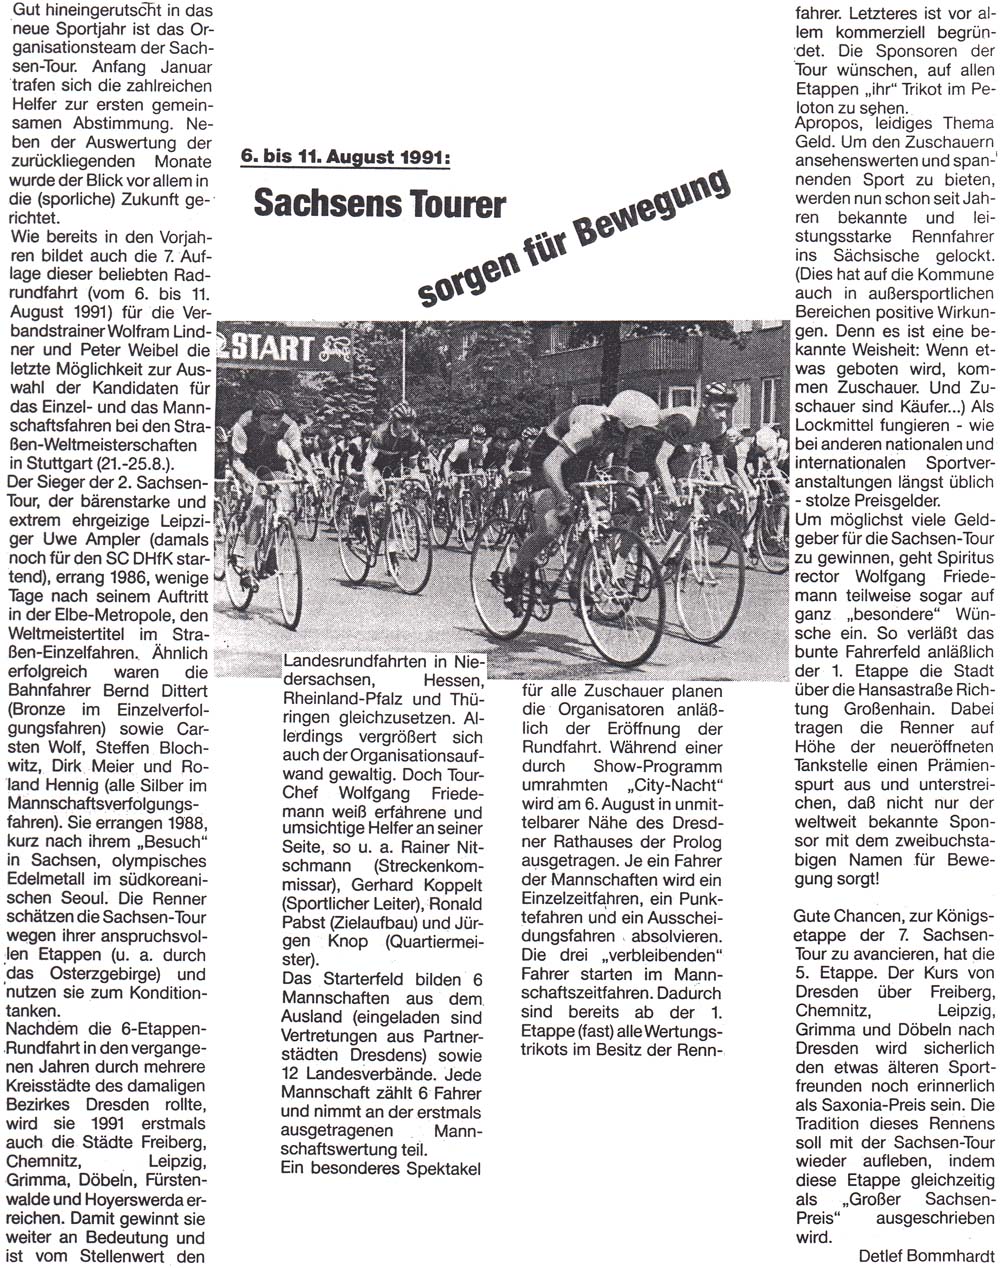 Ankündigung der Sachsen-Tour der Radsportler 1991